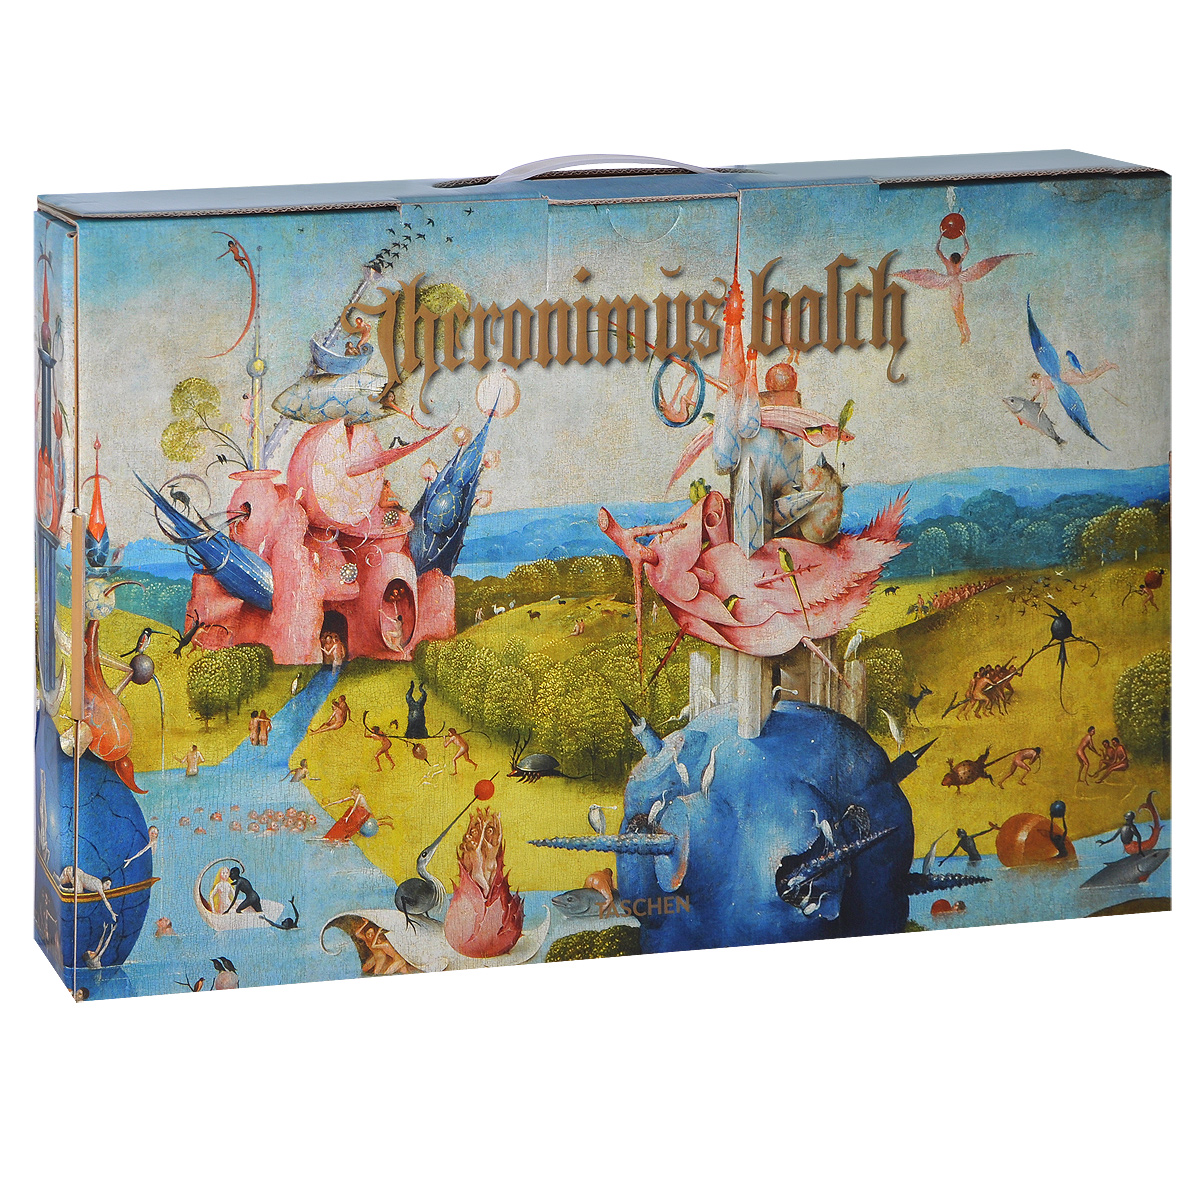 фото Hieronymus Bosch: The Complete Works Taschen